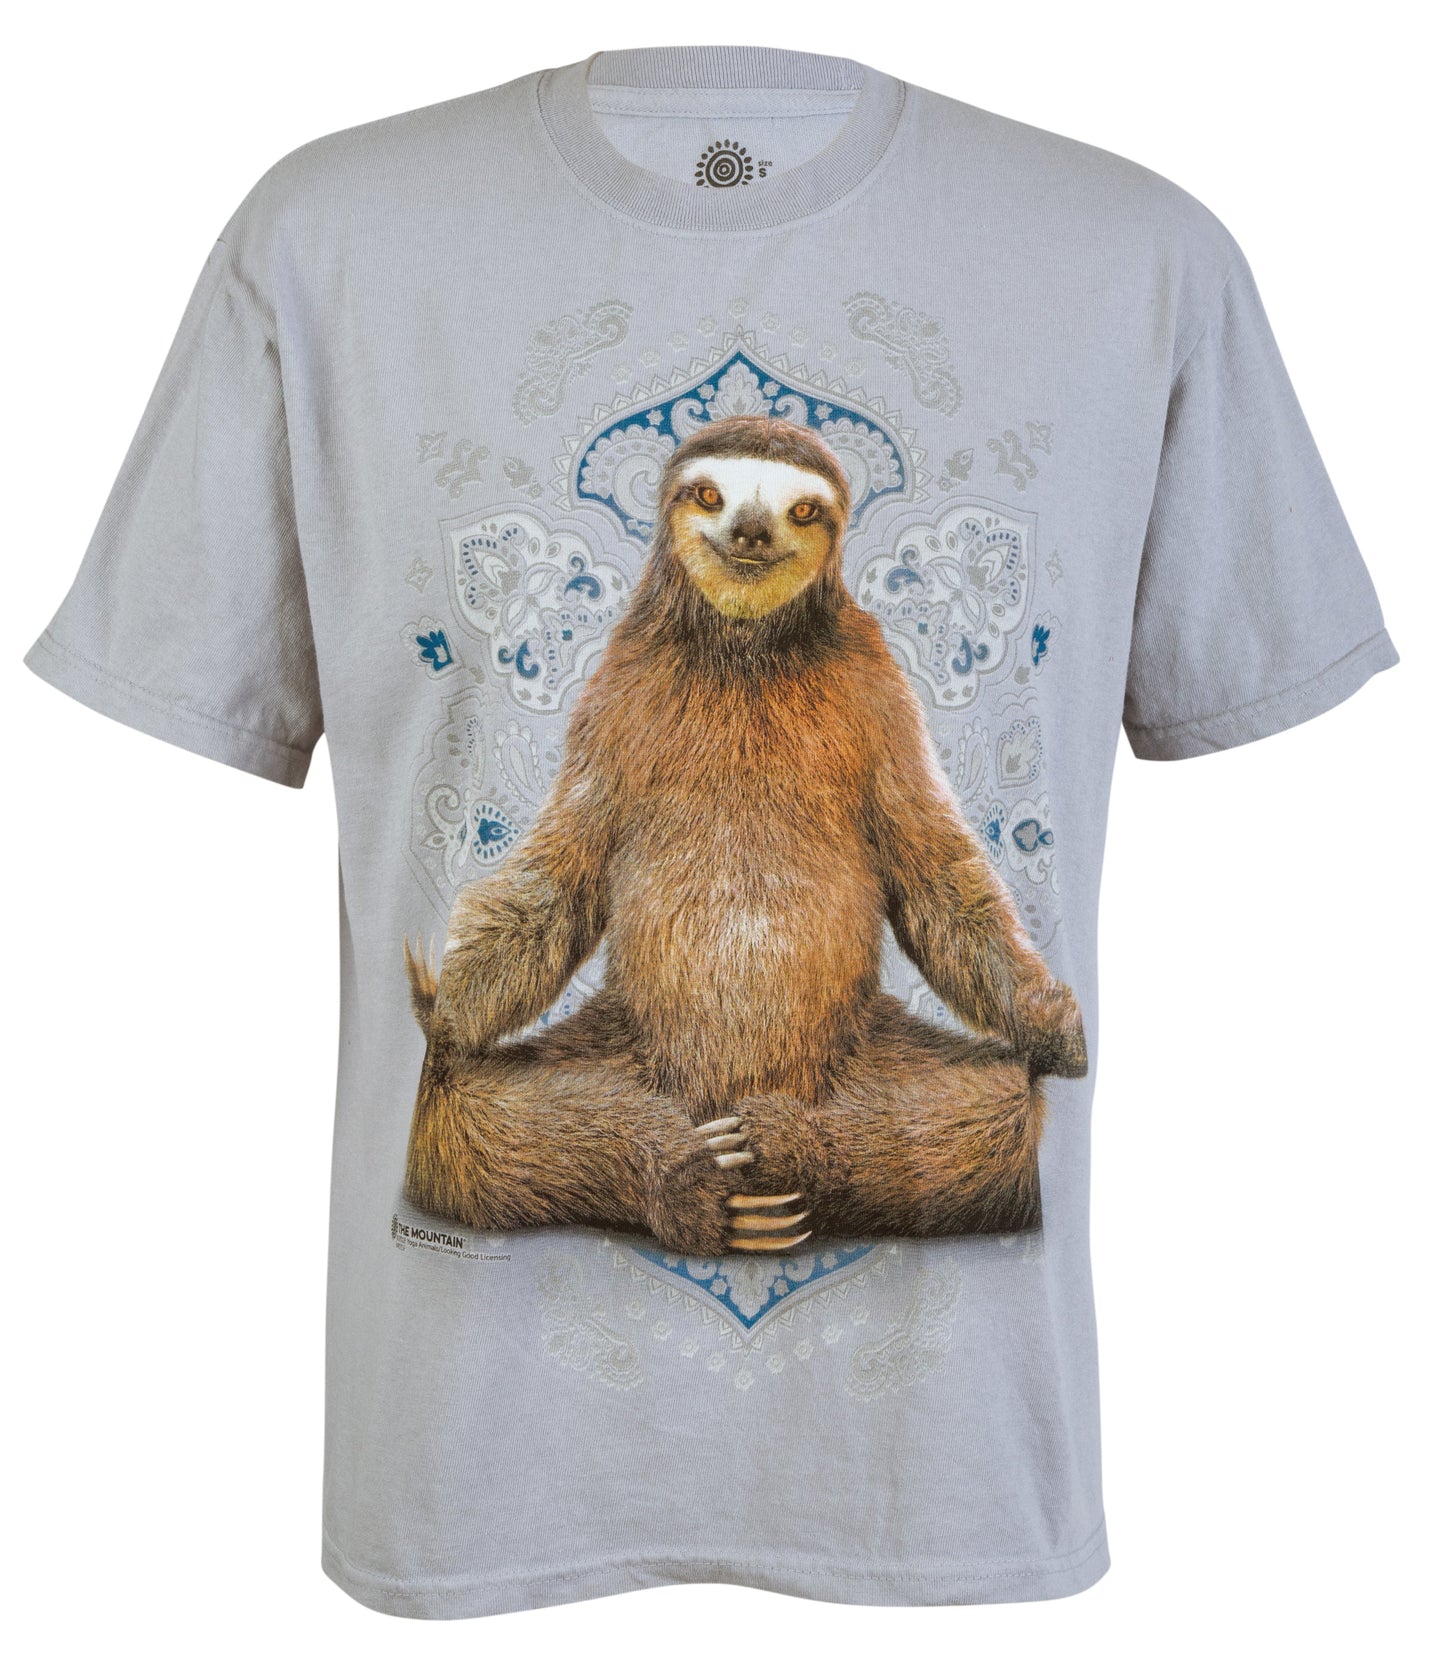 Yoga Pose Sloth T-Shirt